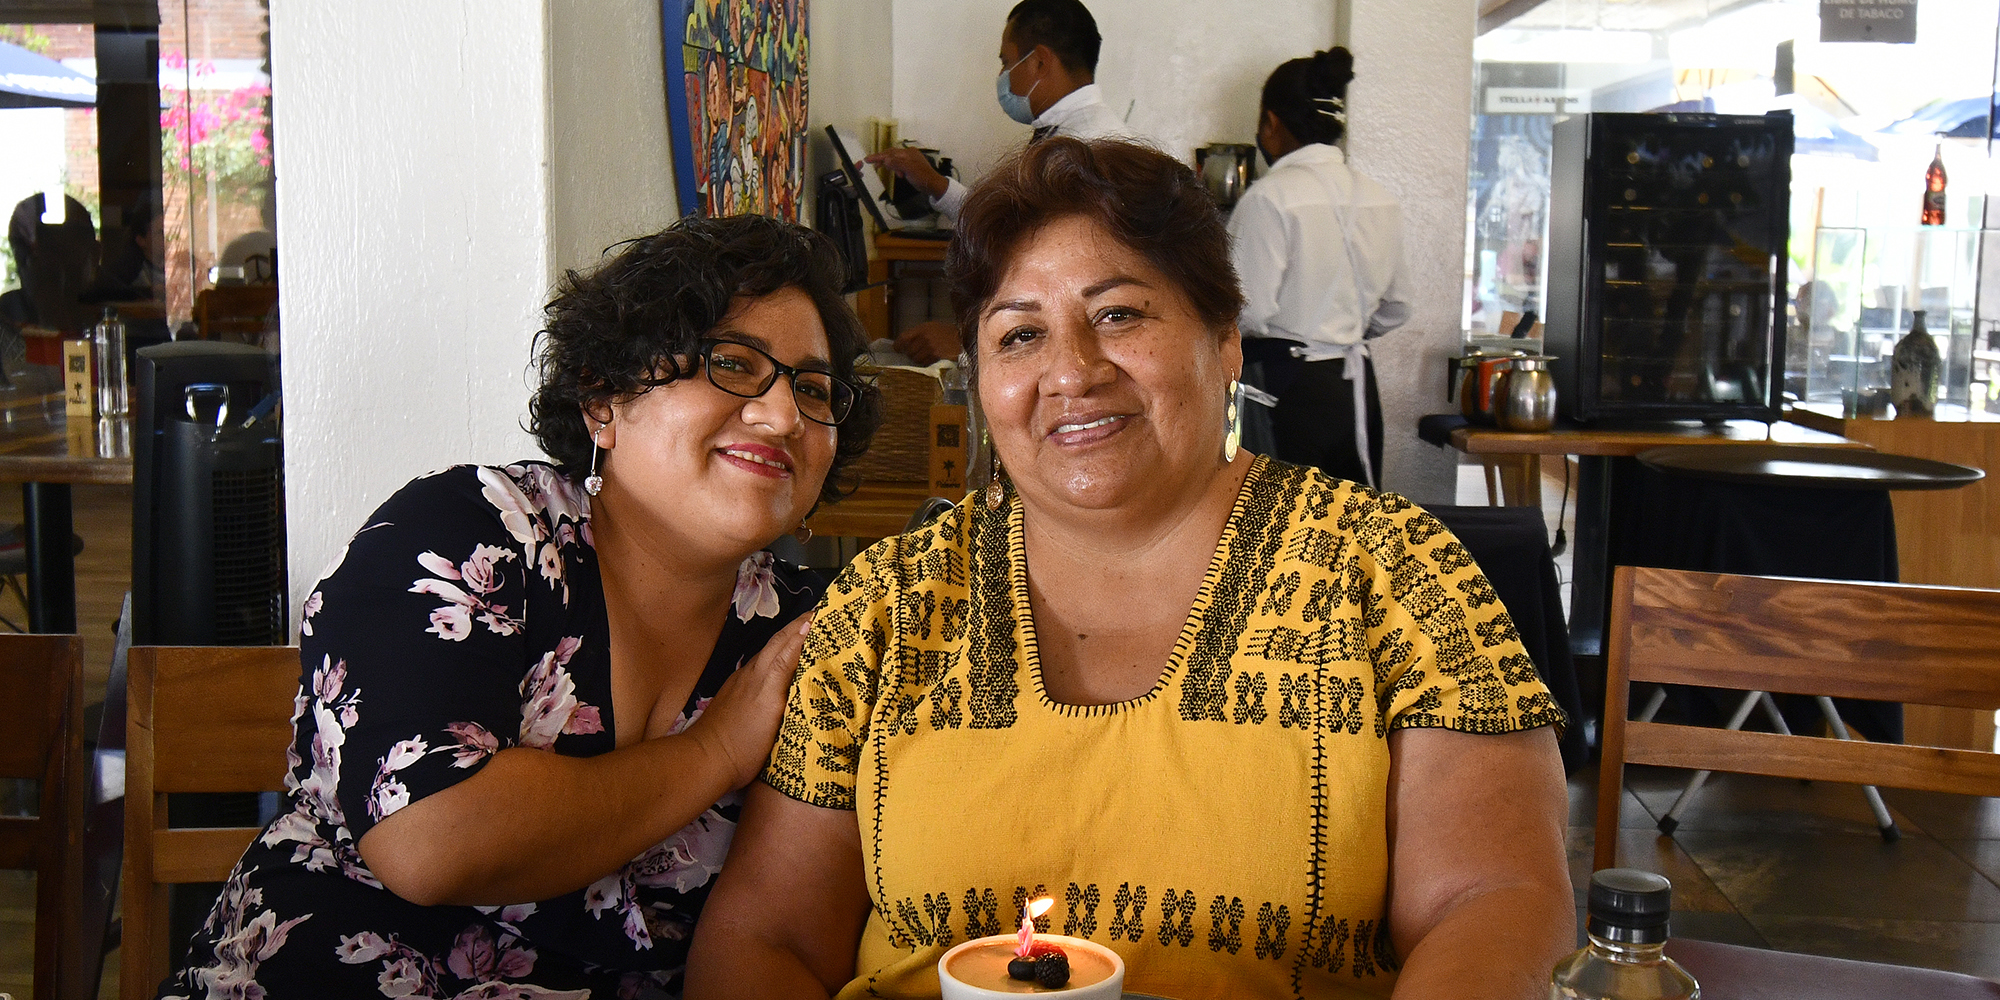 Buenos deseos para Felicitas | El Imparcial de Oaxaca